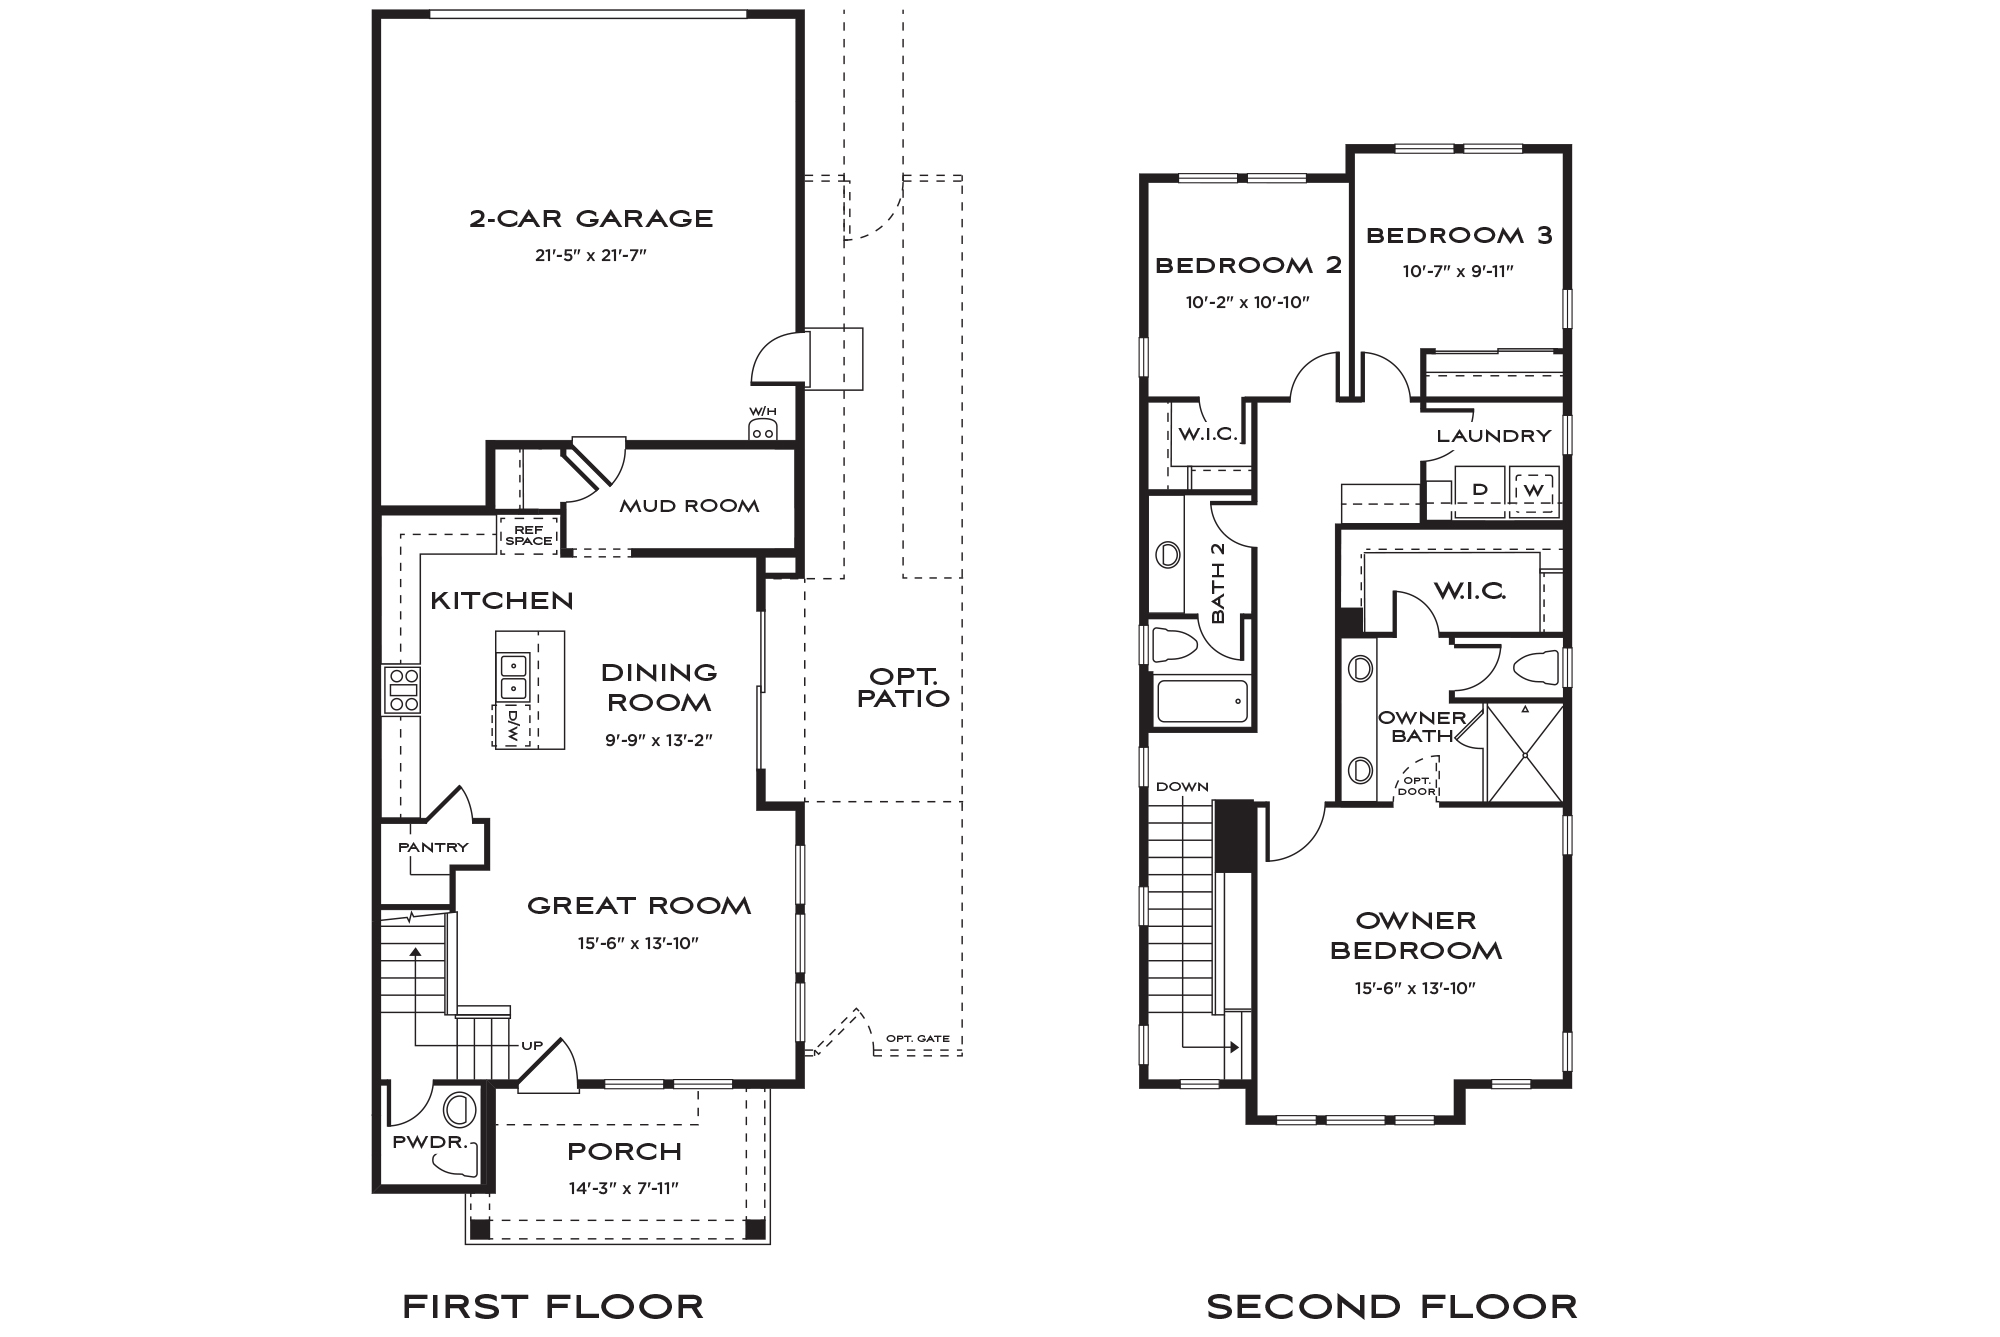 Little Lane Carson City, NV - Residence One - Floor Plan